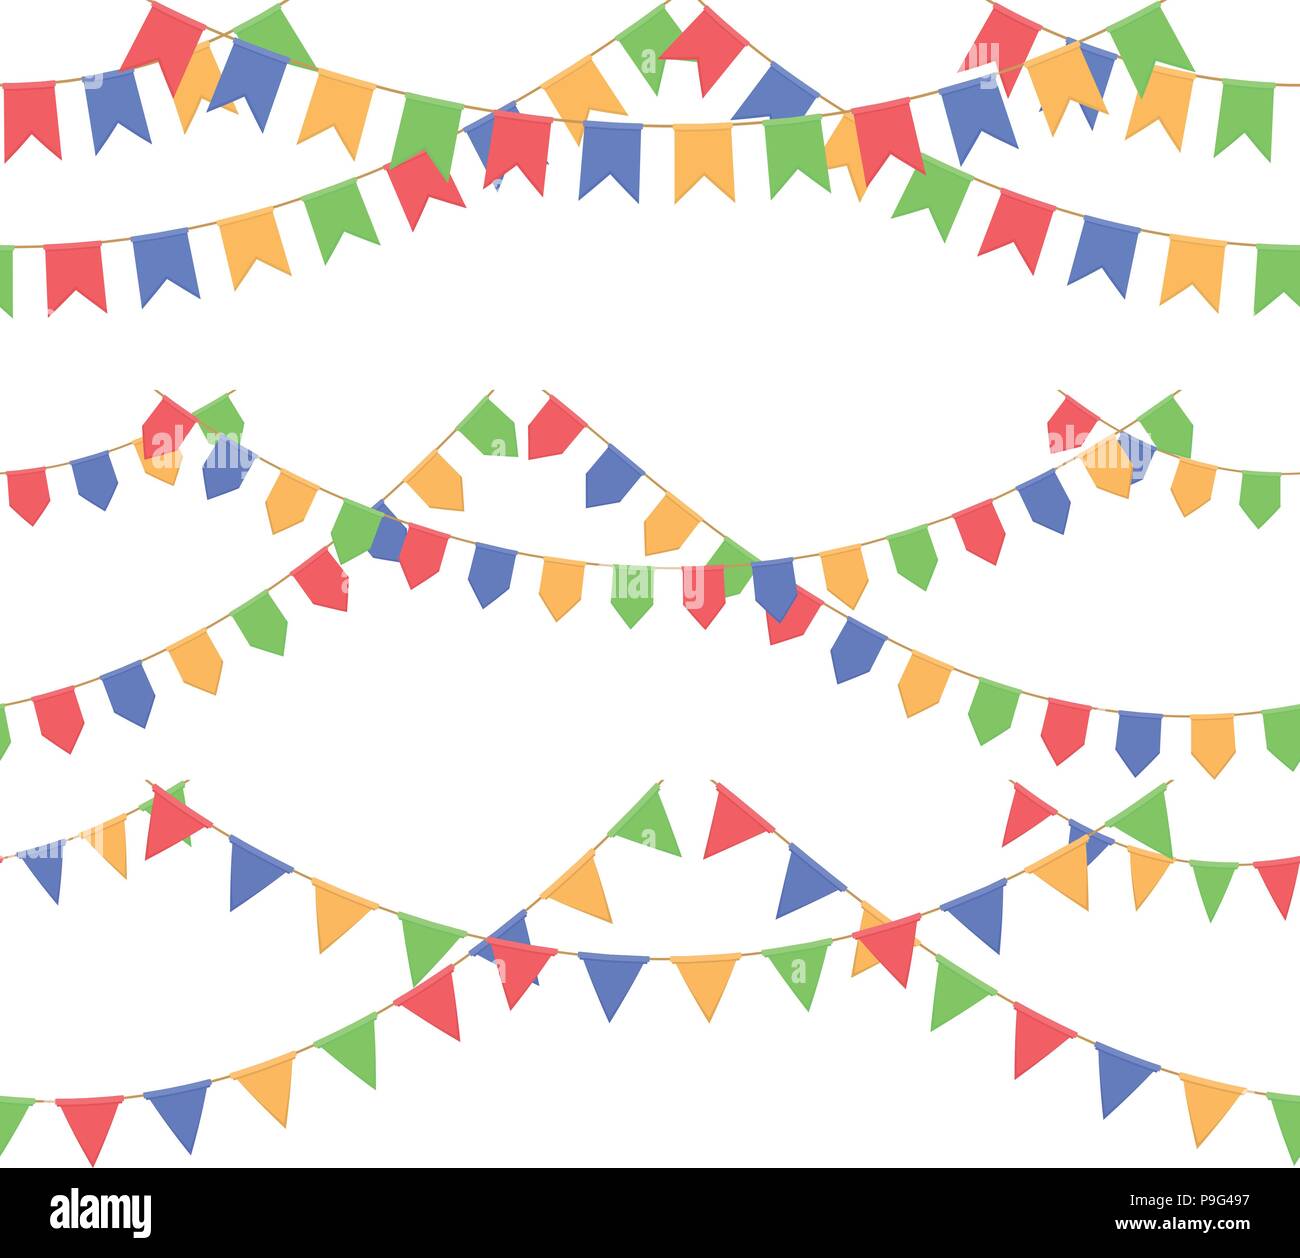 Ensemble de drapeaux célébration avec Garland, chaîne rouge, bleu, jaune, vert pennons sans arrière-plan, le pied et la bannière pour célébration Illustration de Vecteur